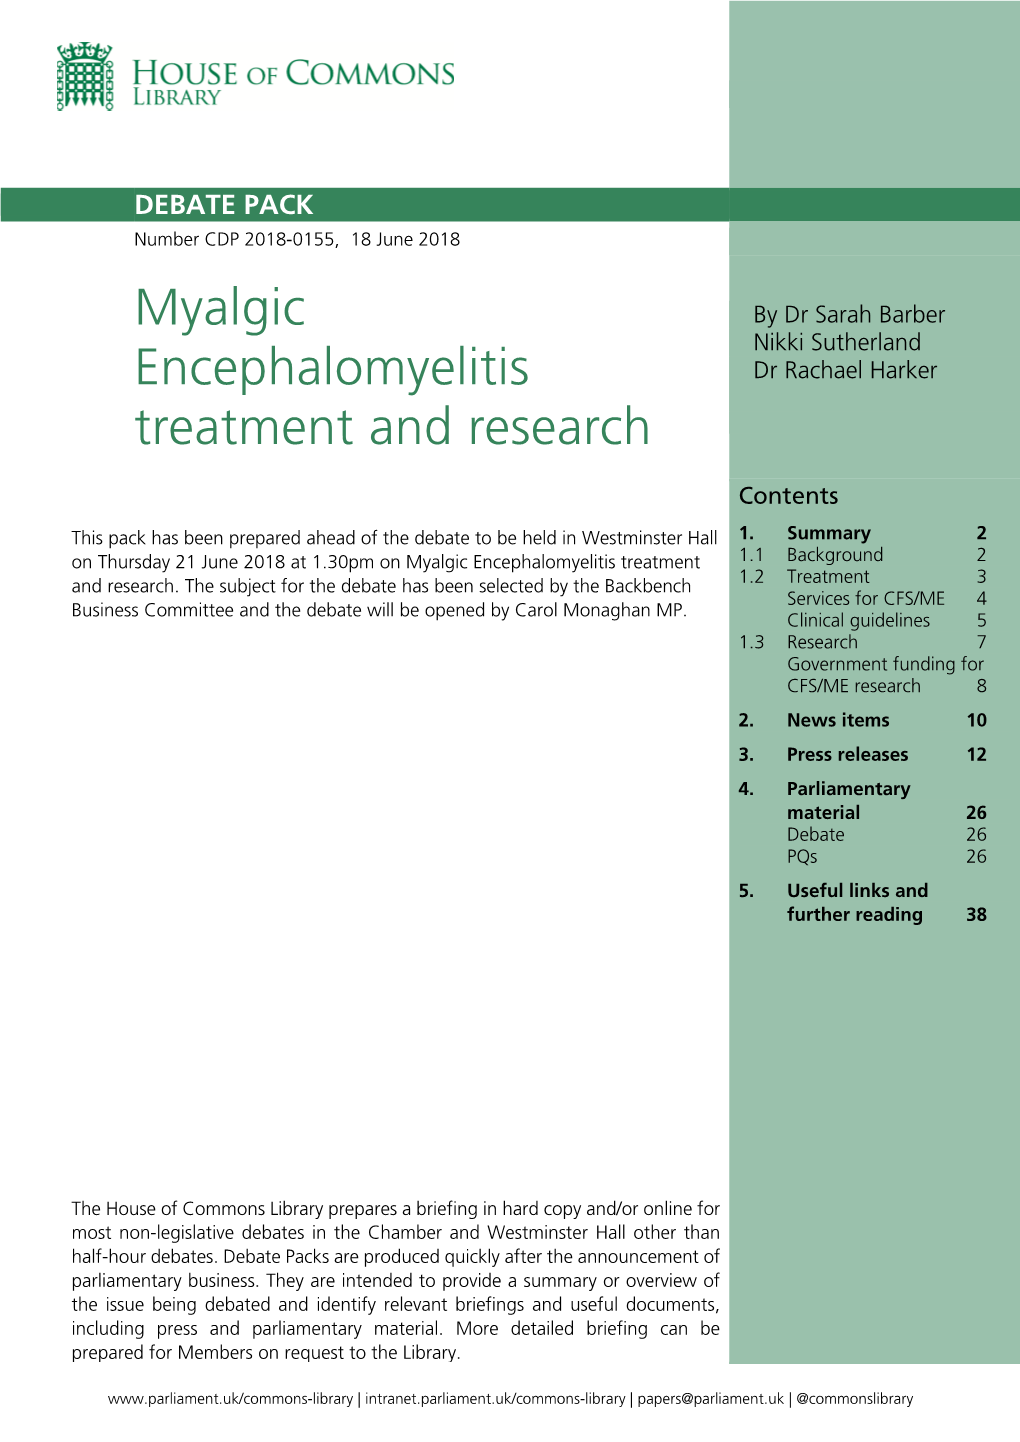 Myalgic Encephalomyelitis Treatment and Research